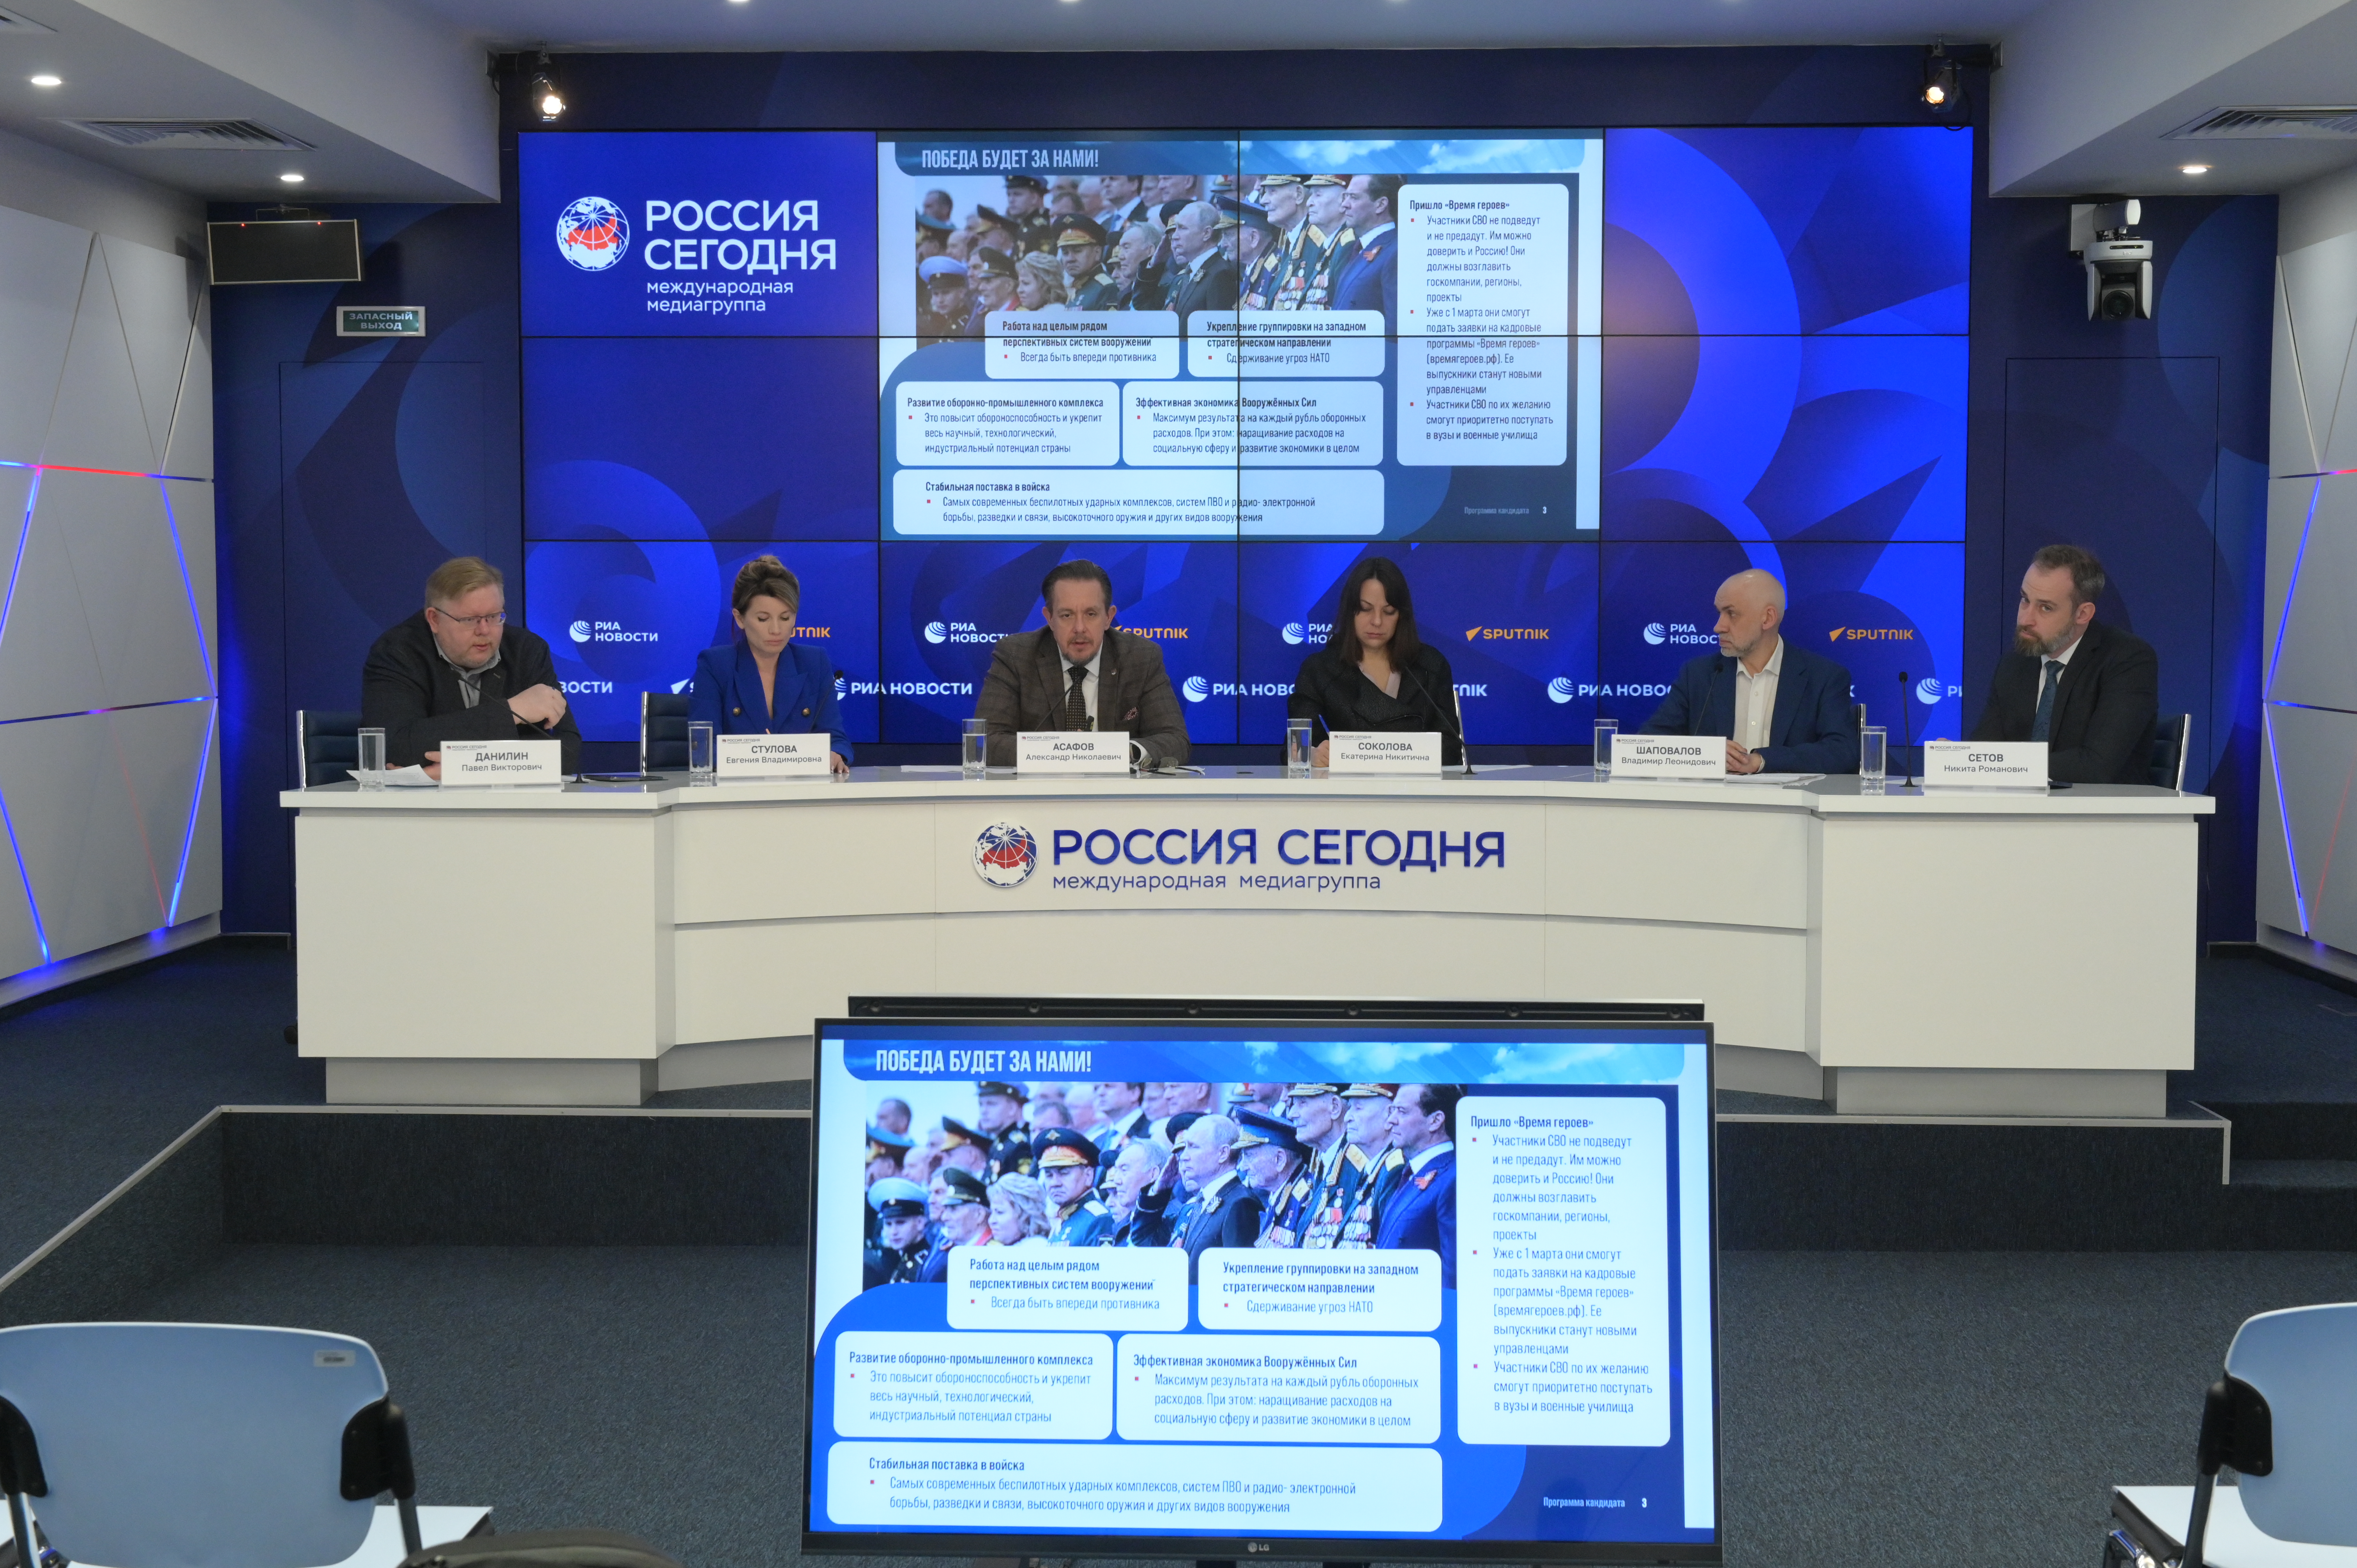 Эксперты ЭИСИ: среди кандидатов только Владимир Путин предлагает реальную программу развития России